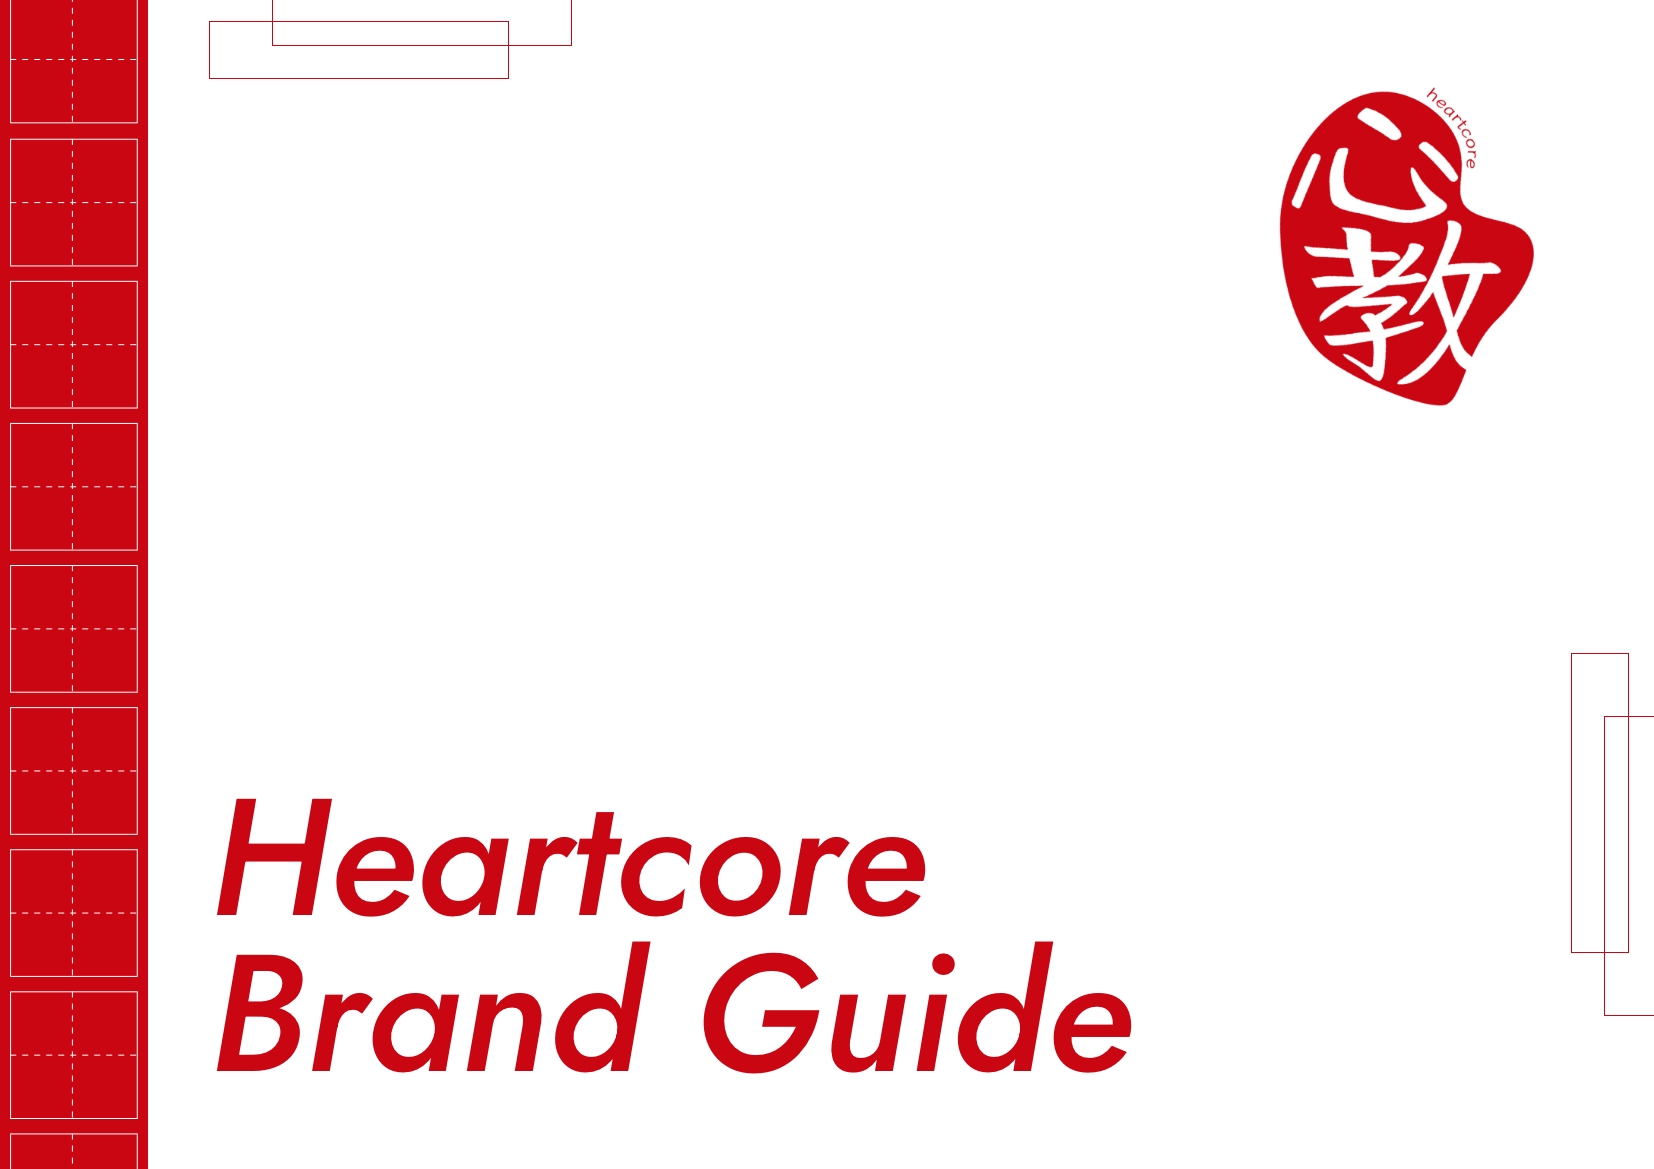 Heartcore Corporate Guide